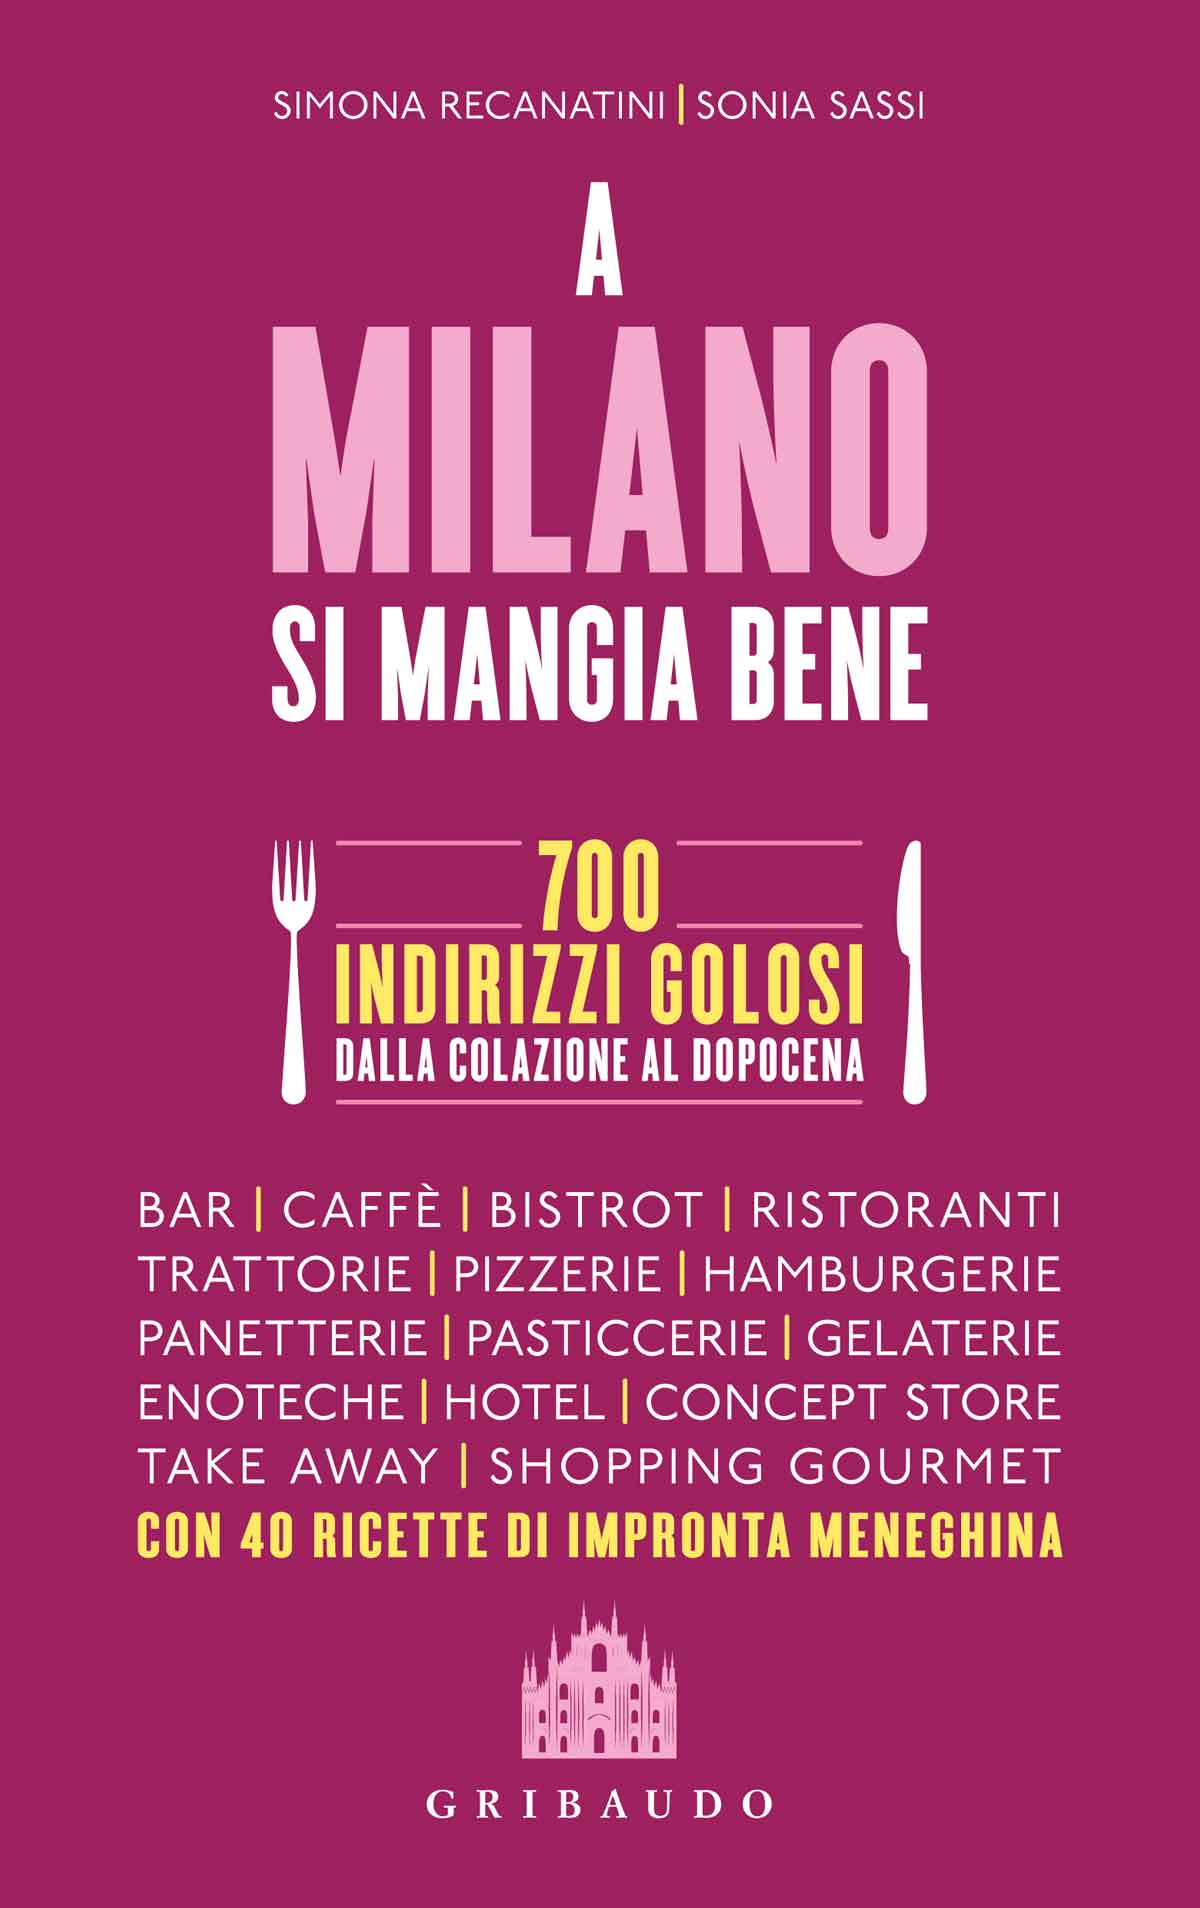 Foto: copertina libro "A Milano si mangia bene" di Simona Recanatini e Sonia Sassi, Ed. Gribaudo